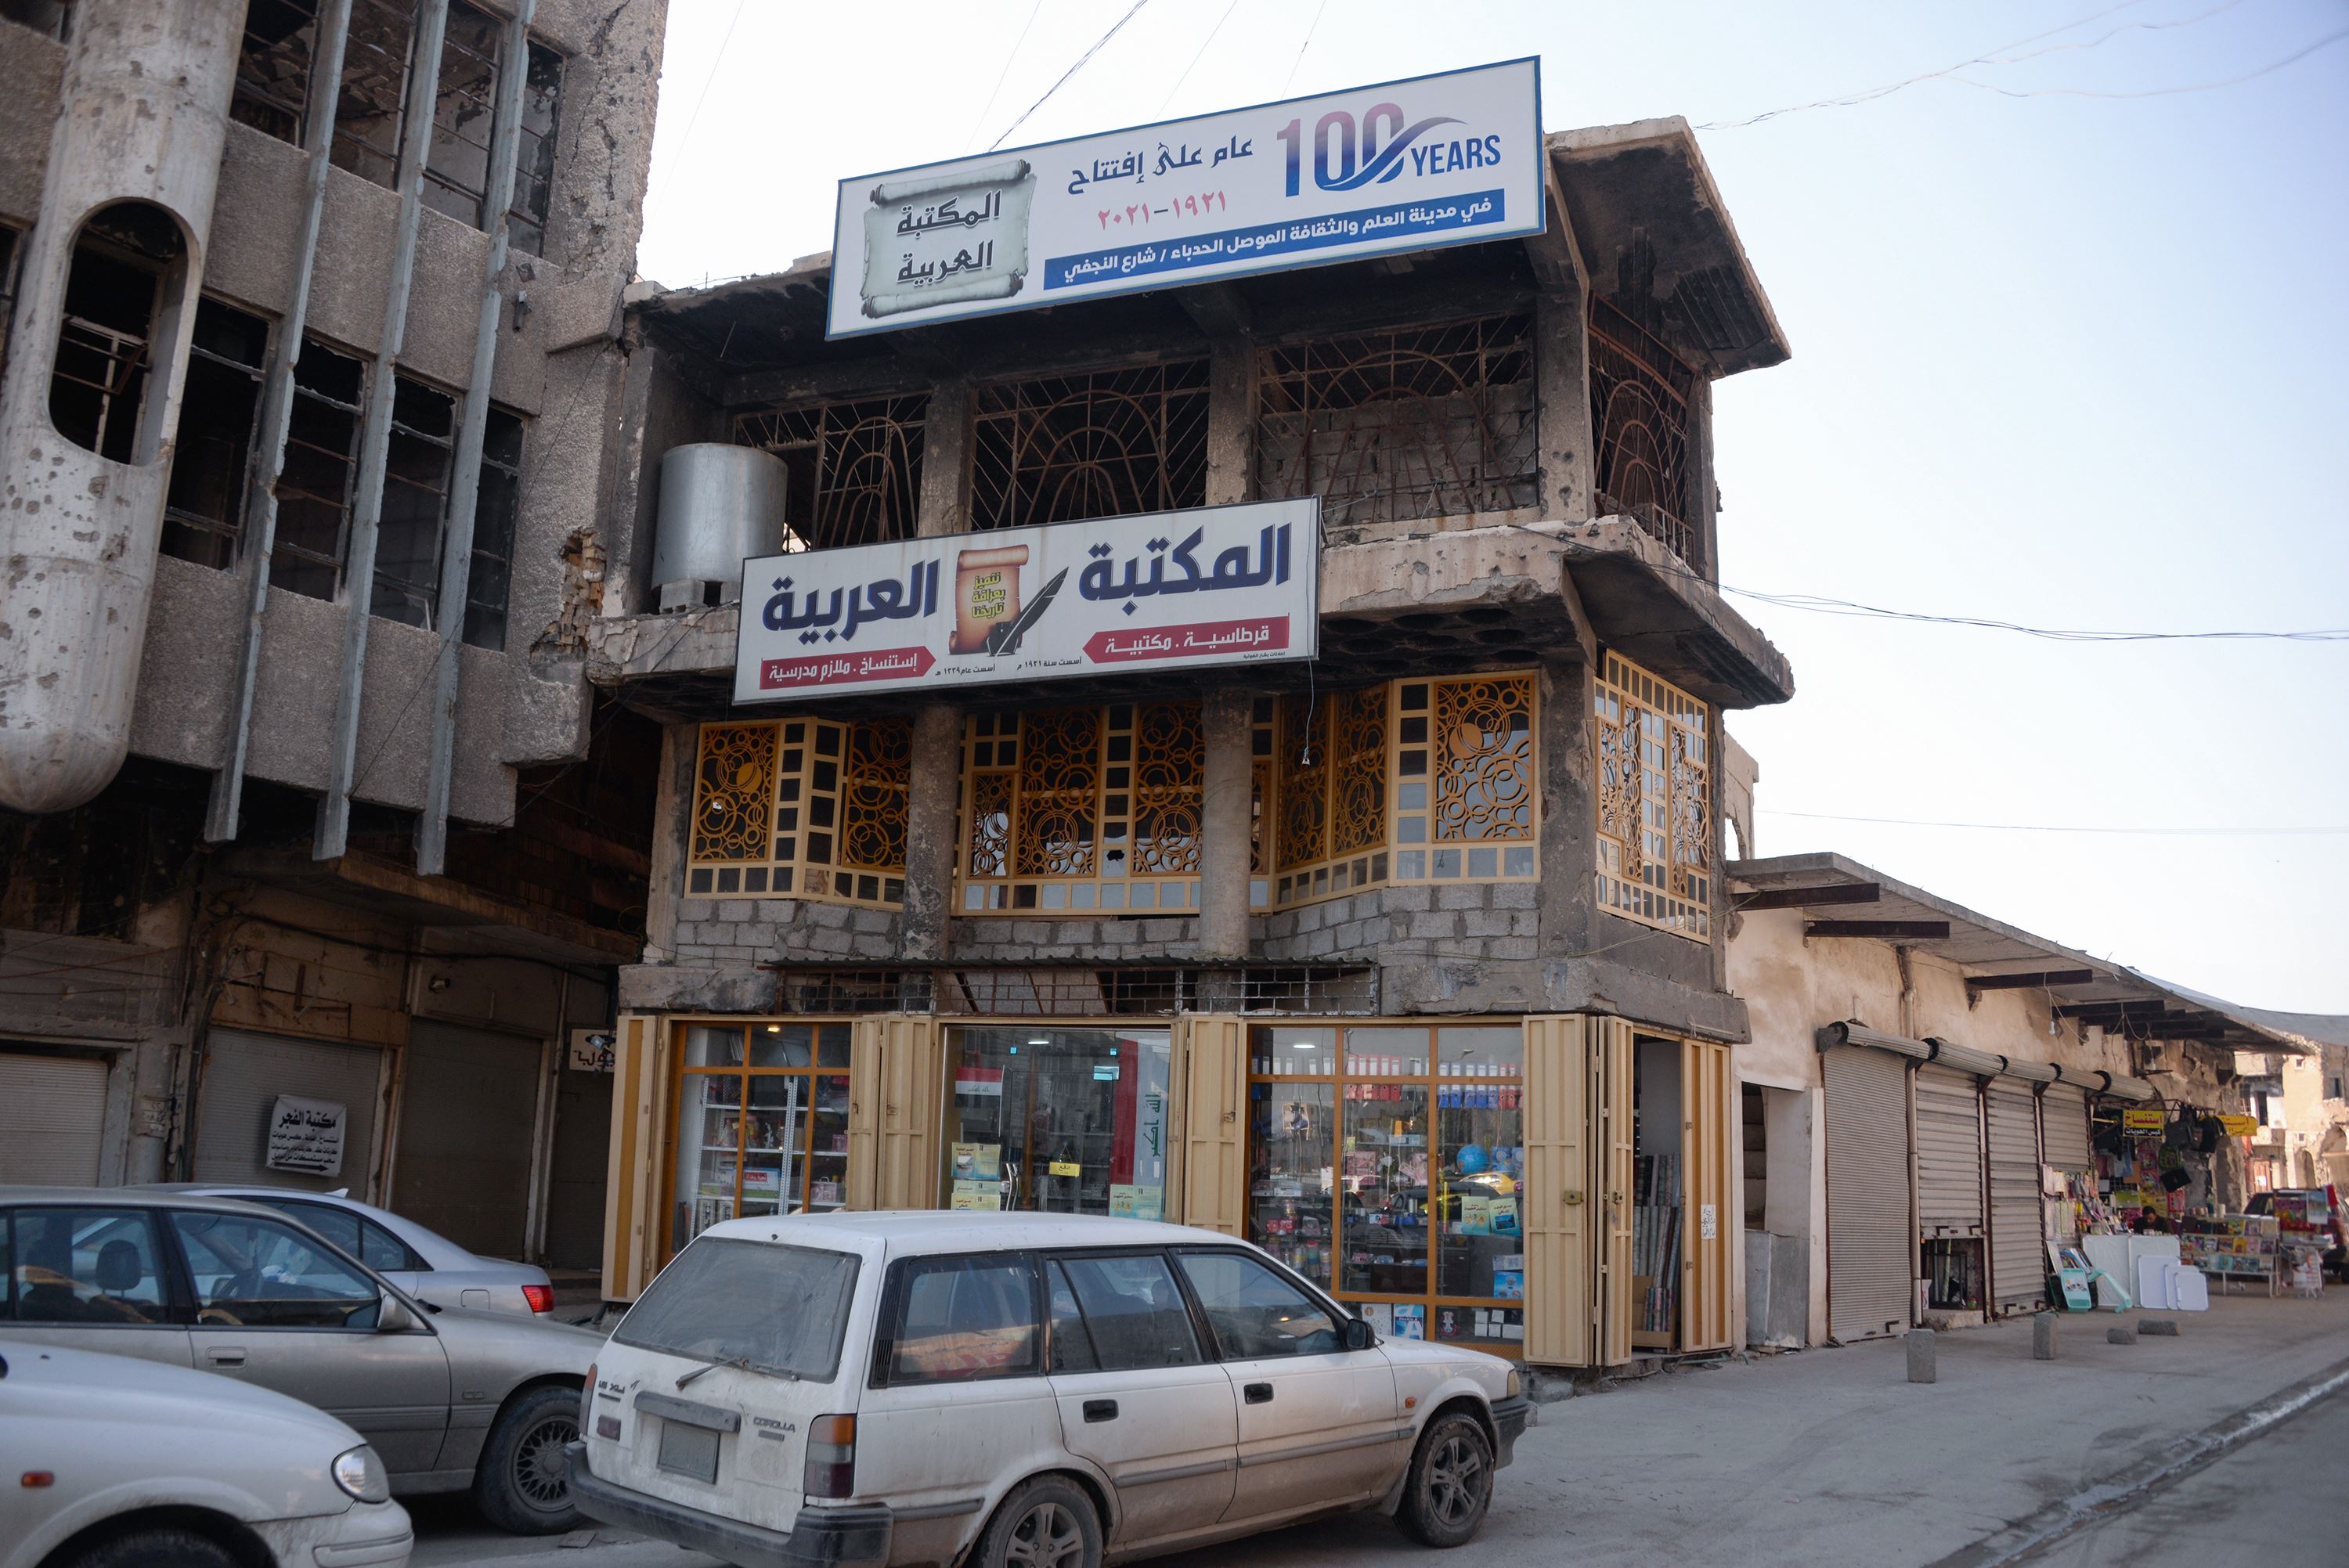 بعد تدميرها على يد الارهابيين.. عودة الروح لمكتبات الموصل! 